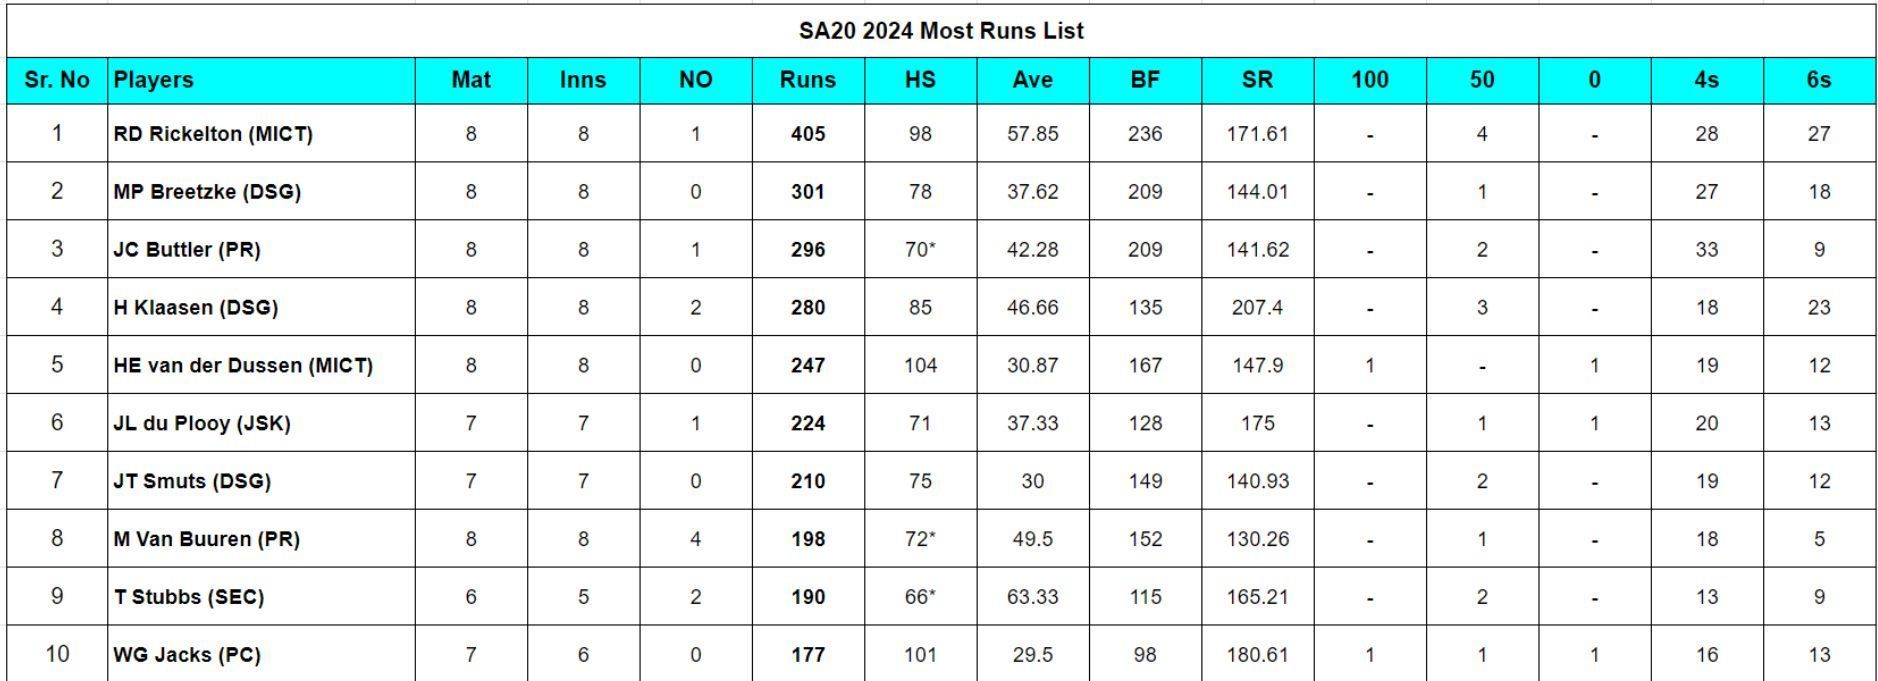 SA20 2024 Most Runs List updated after Match 23